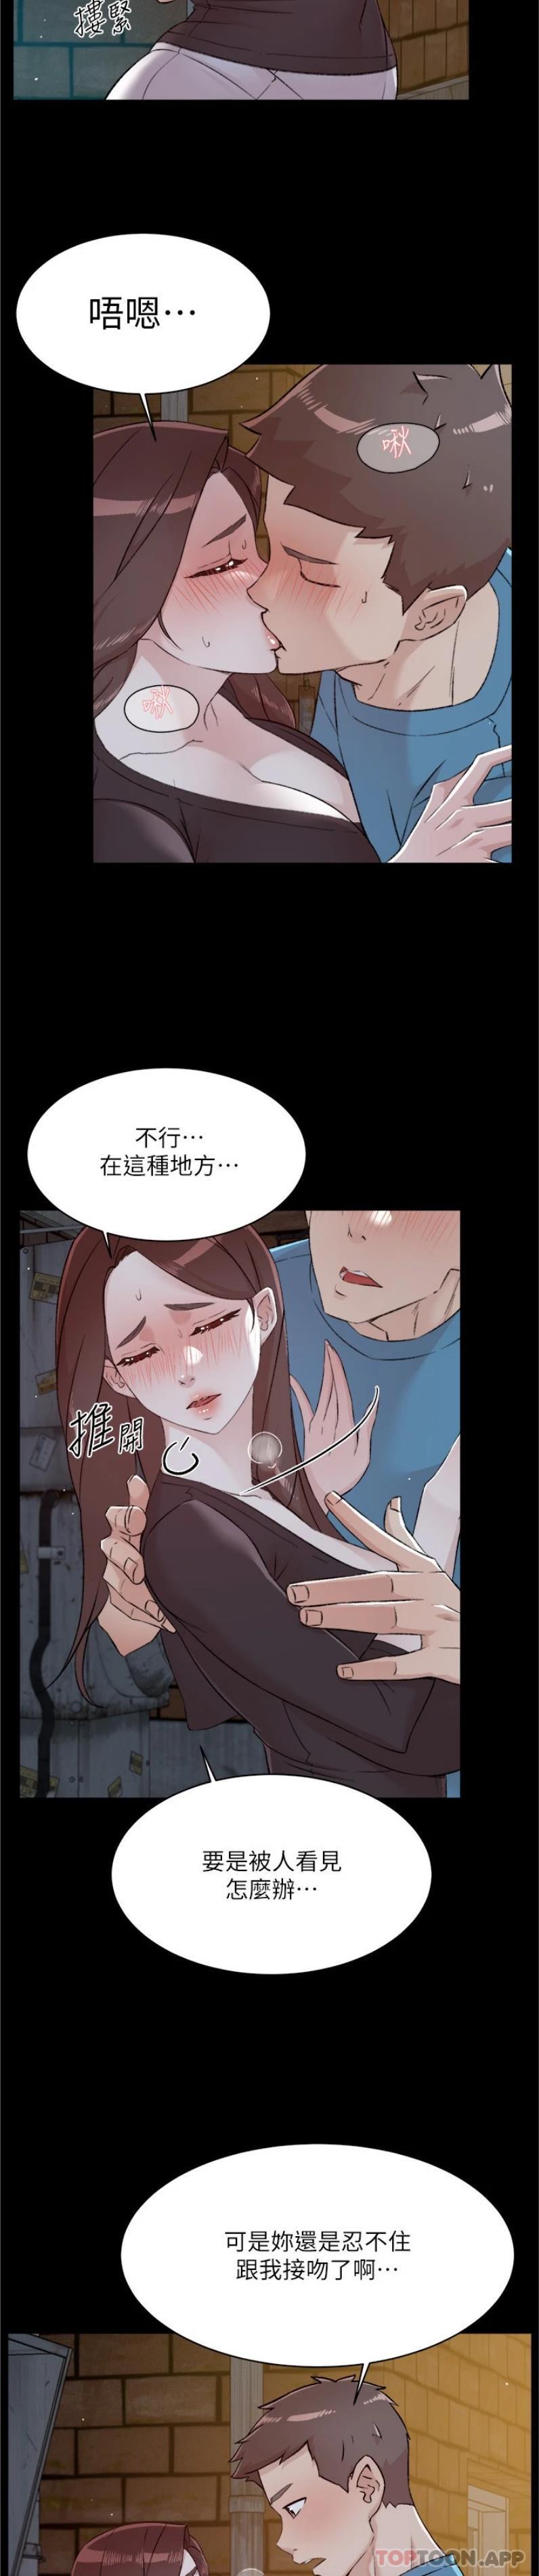 韩国污漫画 好友的私生活 第107话-在深夜的小巷里… 13